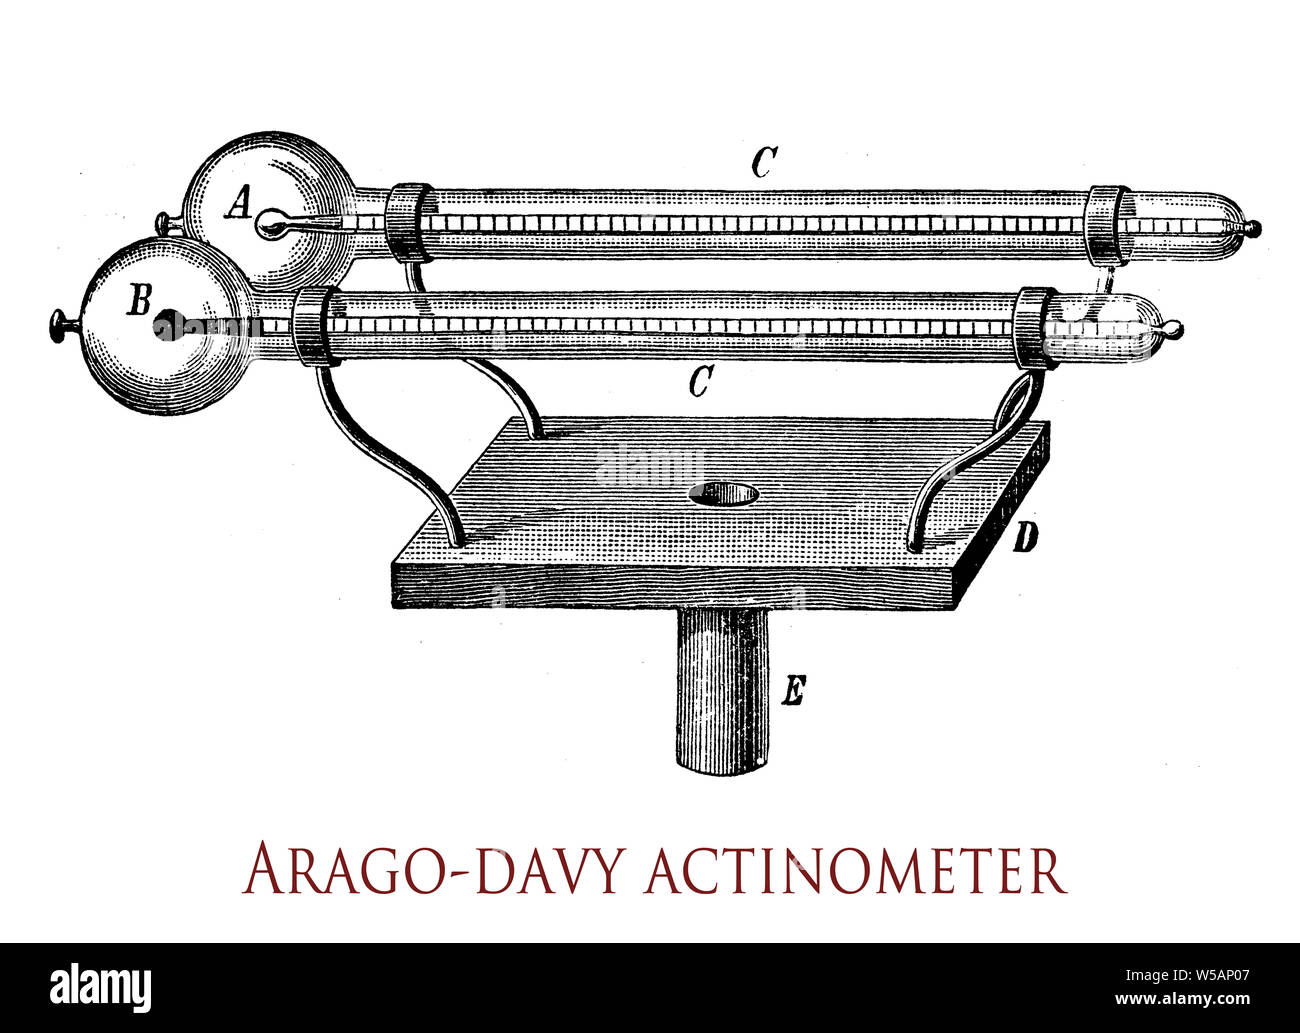 Arago-Davy actinometer Instrument zur Messung der Intensität der Sonnenstrahlen besteht aus einem Paar von Hell- und schwarz-flüssigkeitsthermometer jedes in einem Glas sphärischen Fall leere der Luft umher: wenn sie der Sonne ausgesetzt, die schwarze Lampe erreicht eine höhere Temperatur als die hellen Lampe, der Unterschied ist ein Index der Wärme. Stockfoto